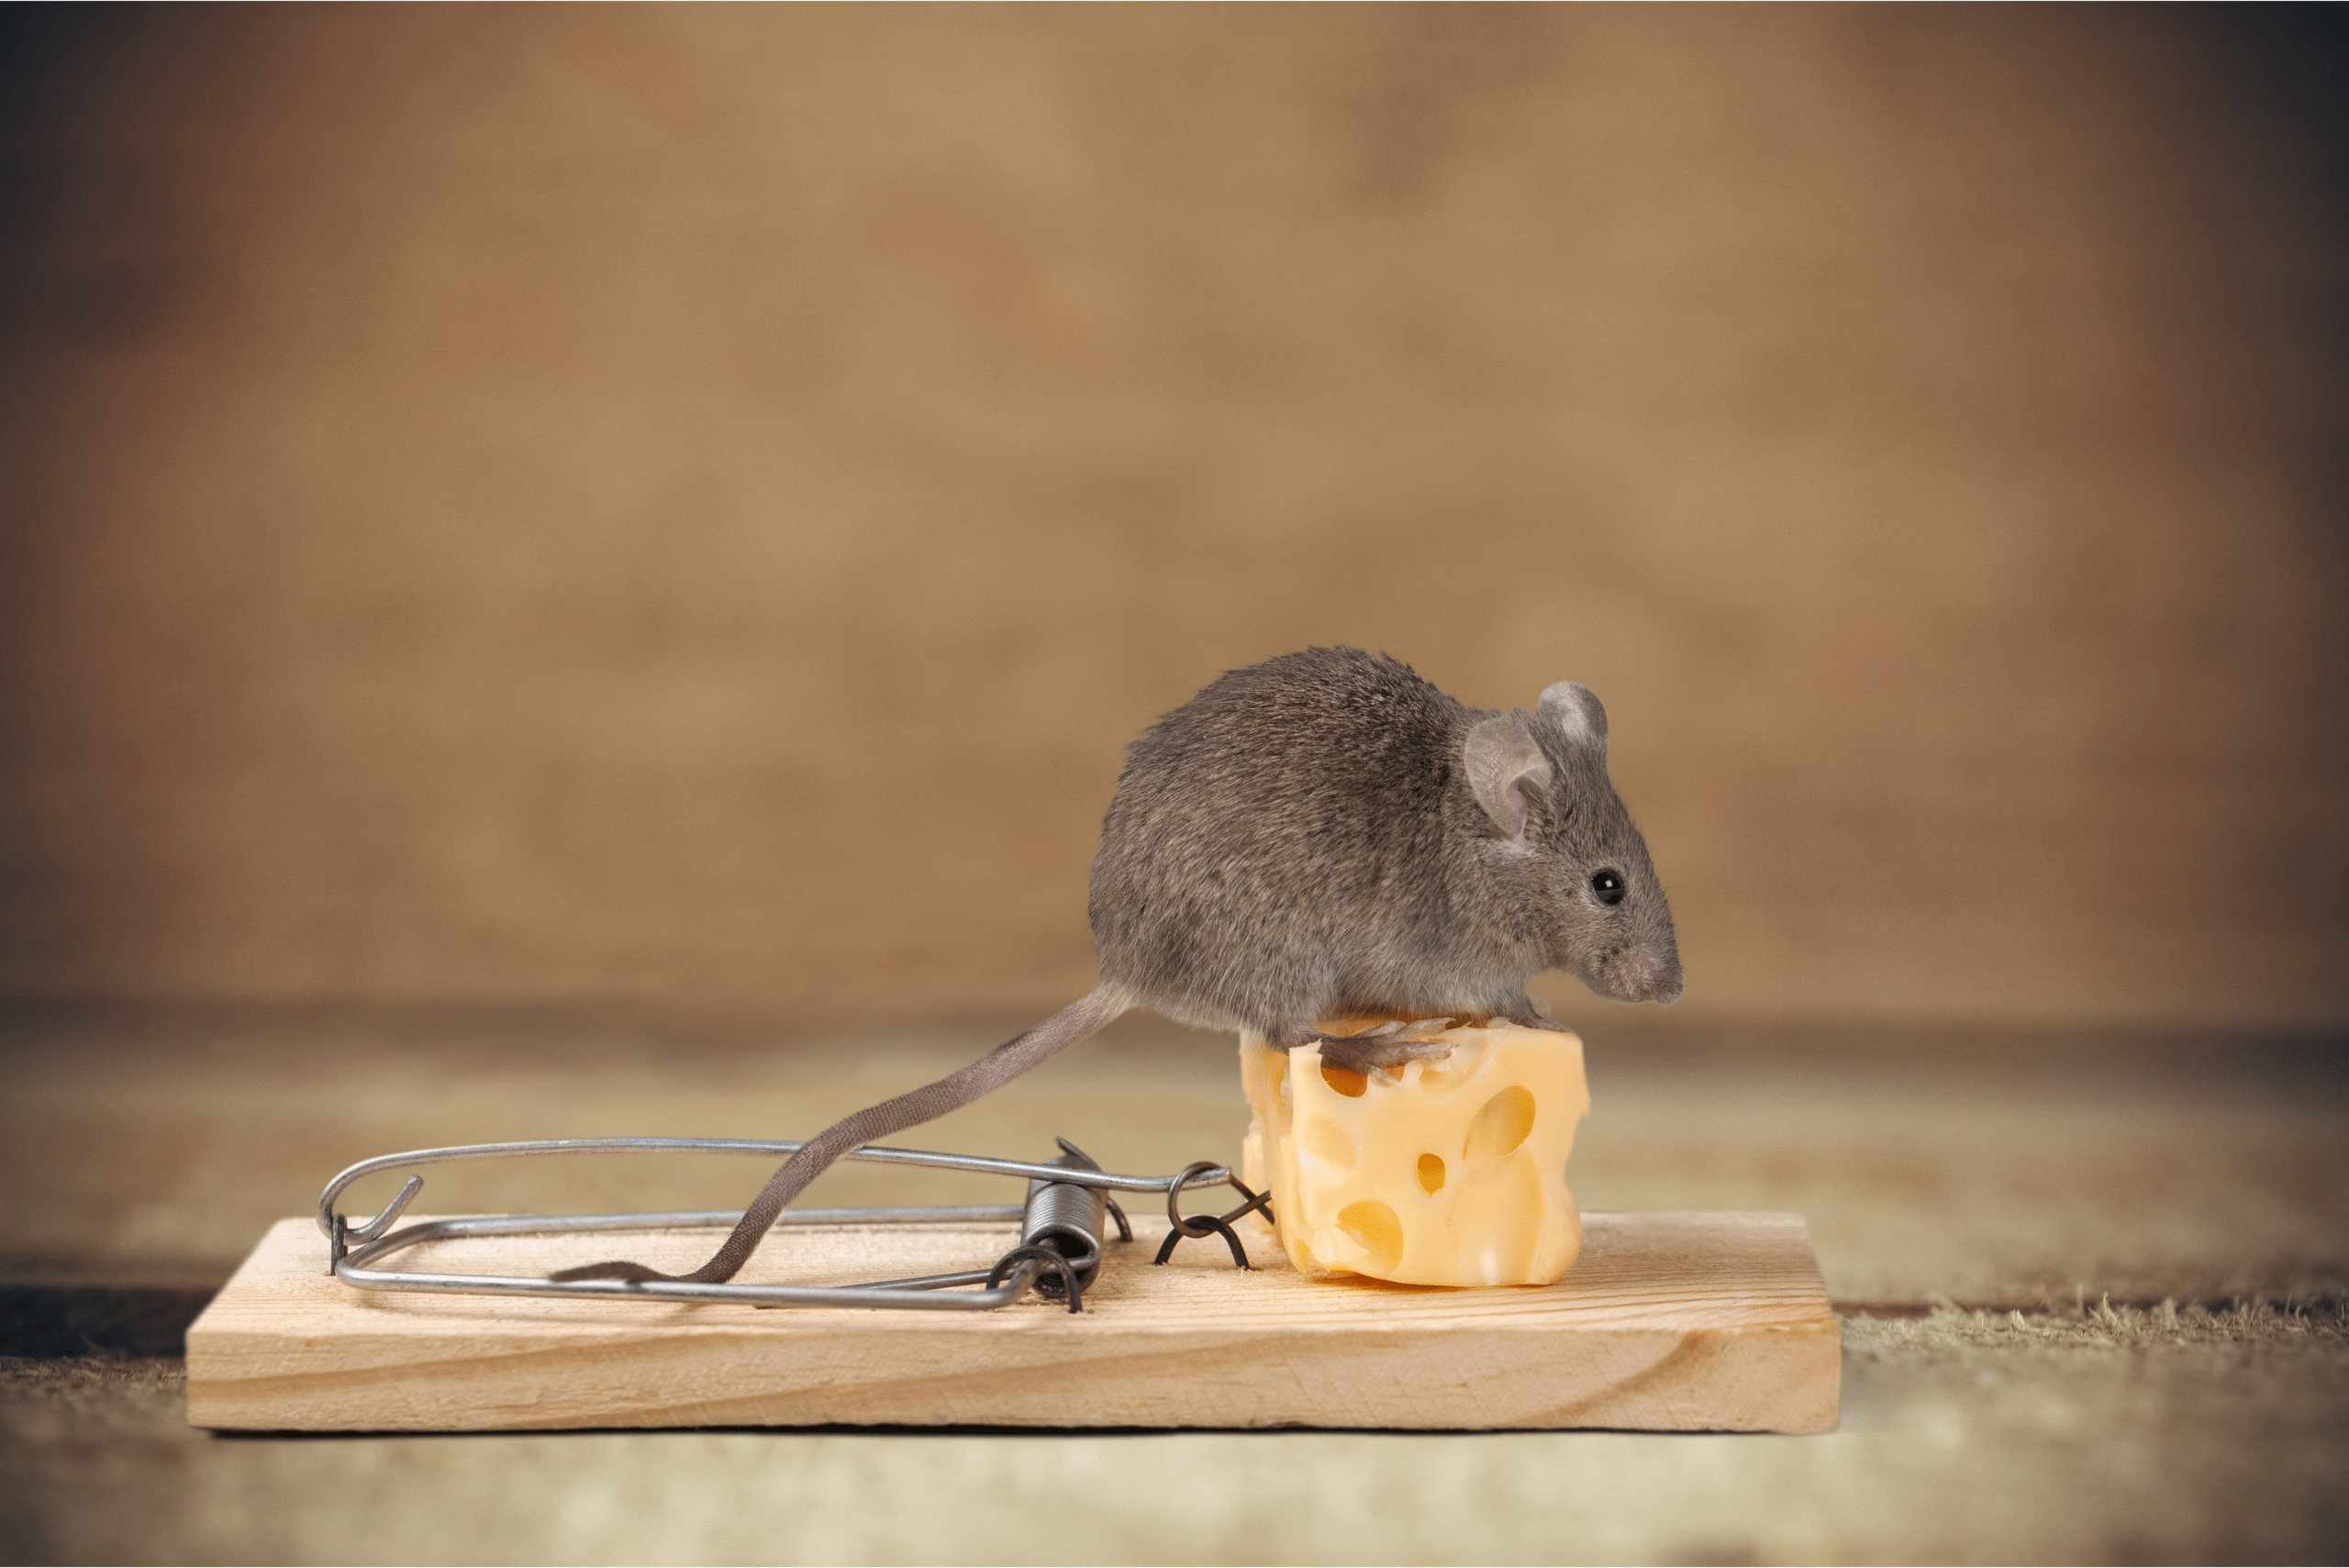 עכבר שעומד על גבי חתיכת גבינה המותקנת על מלכודת.